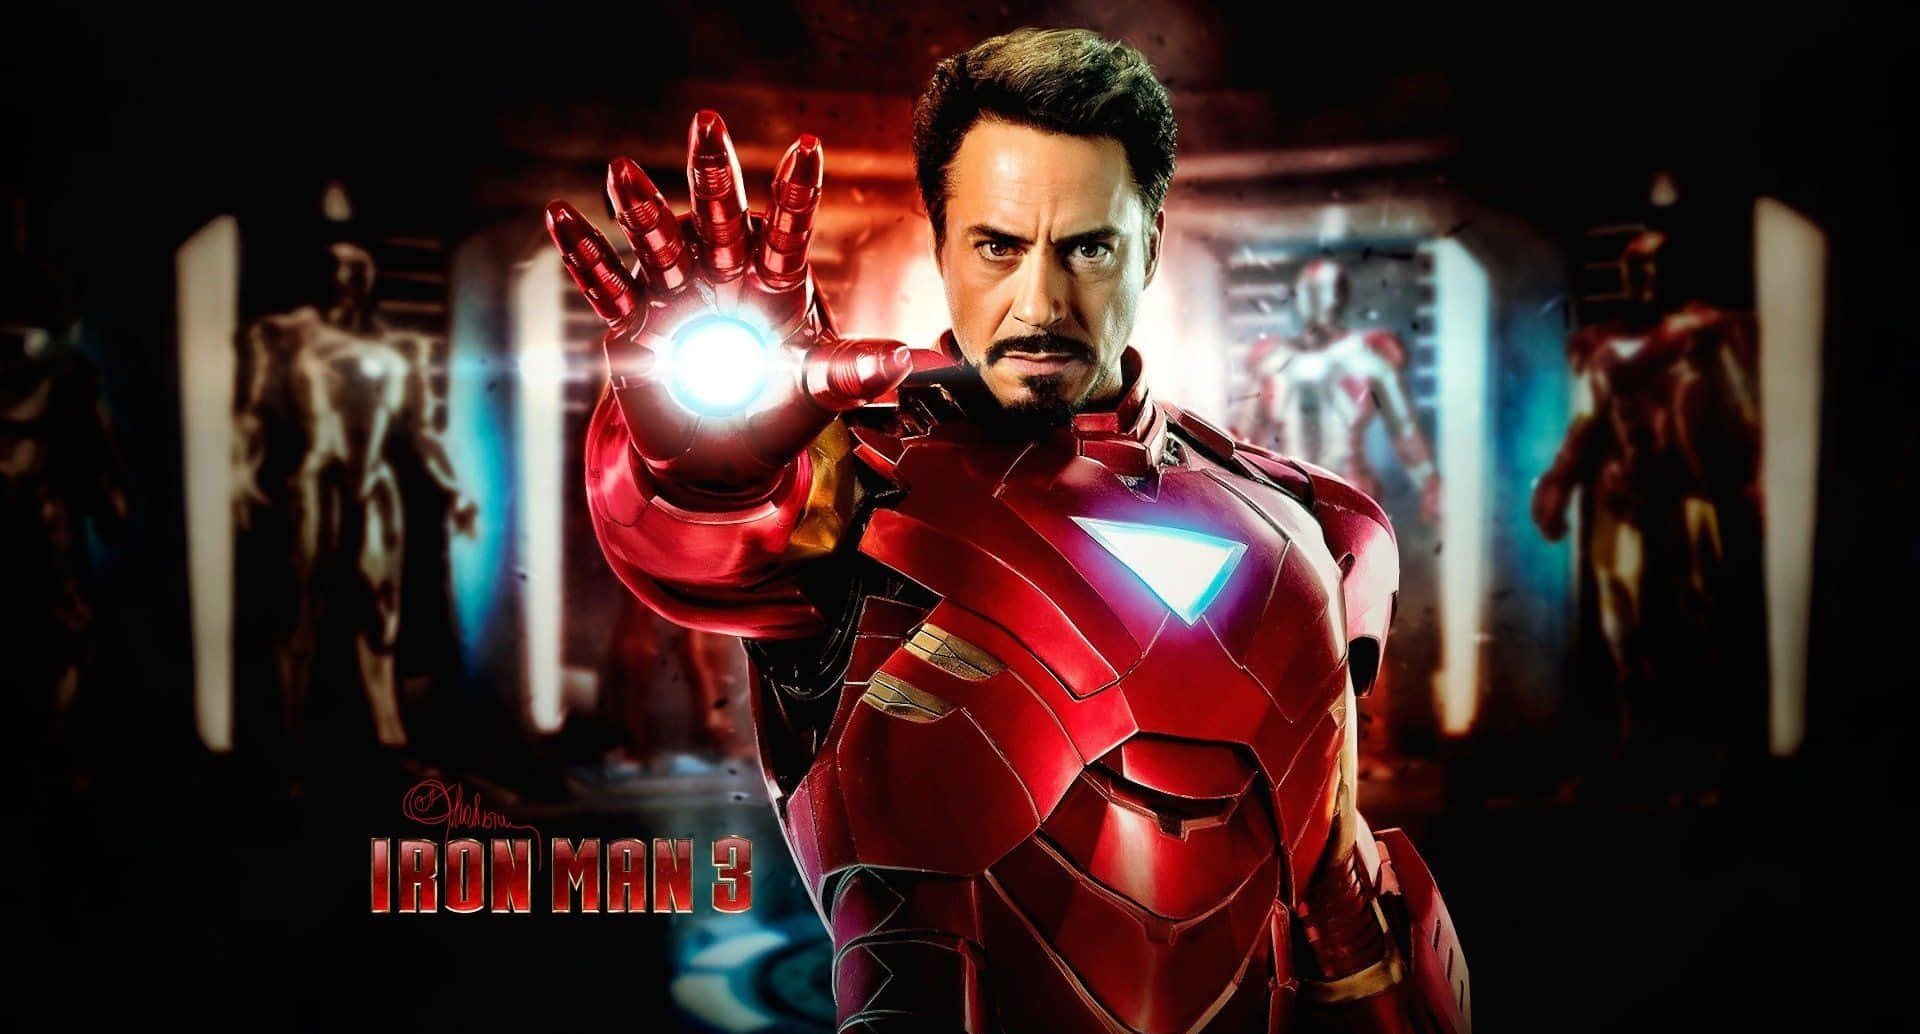 Papelde Parede Do Homem De Ferro 3 Com O Blaster De Mão De Tony Stark. Papel de Parede